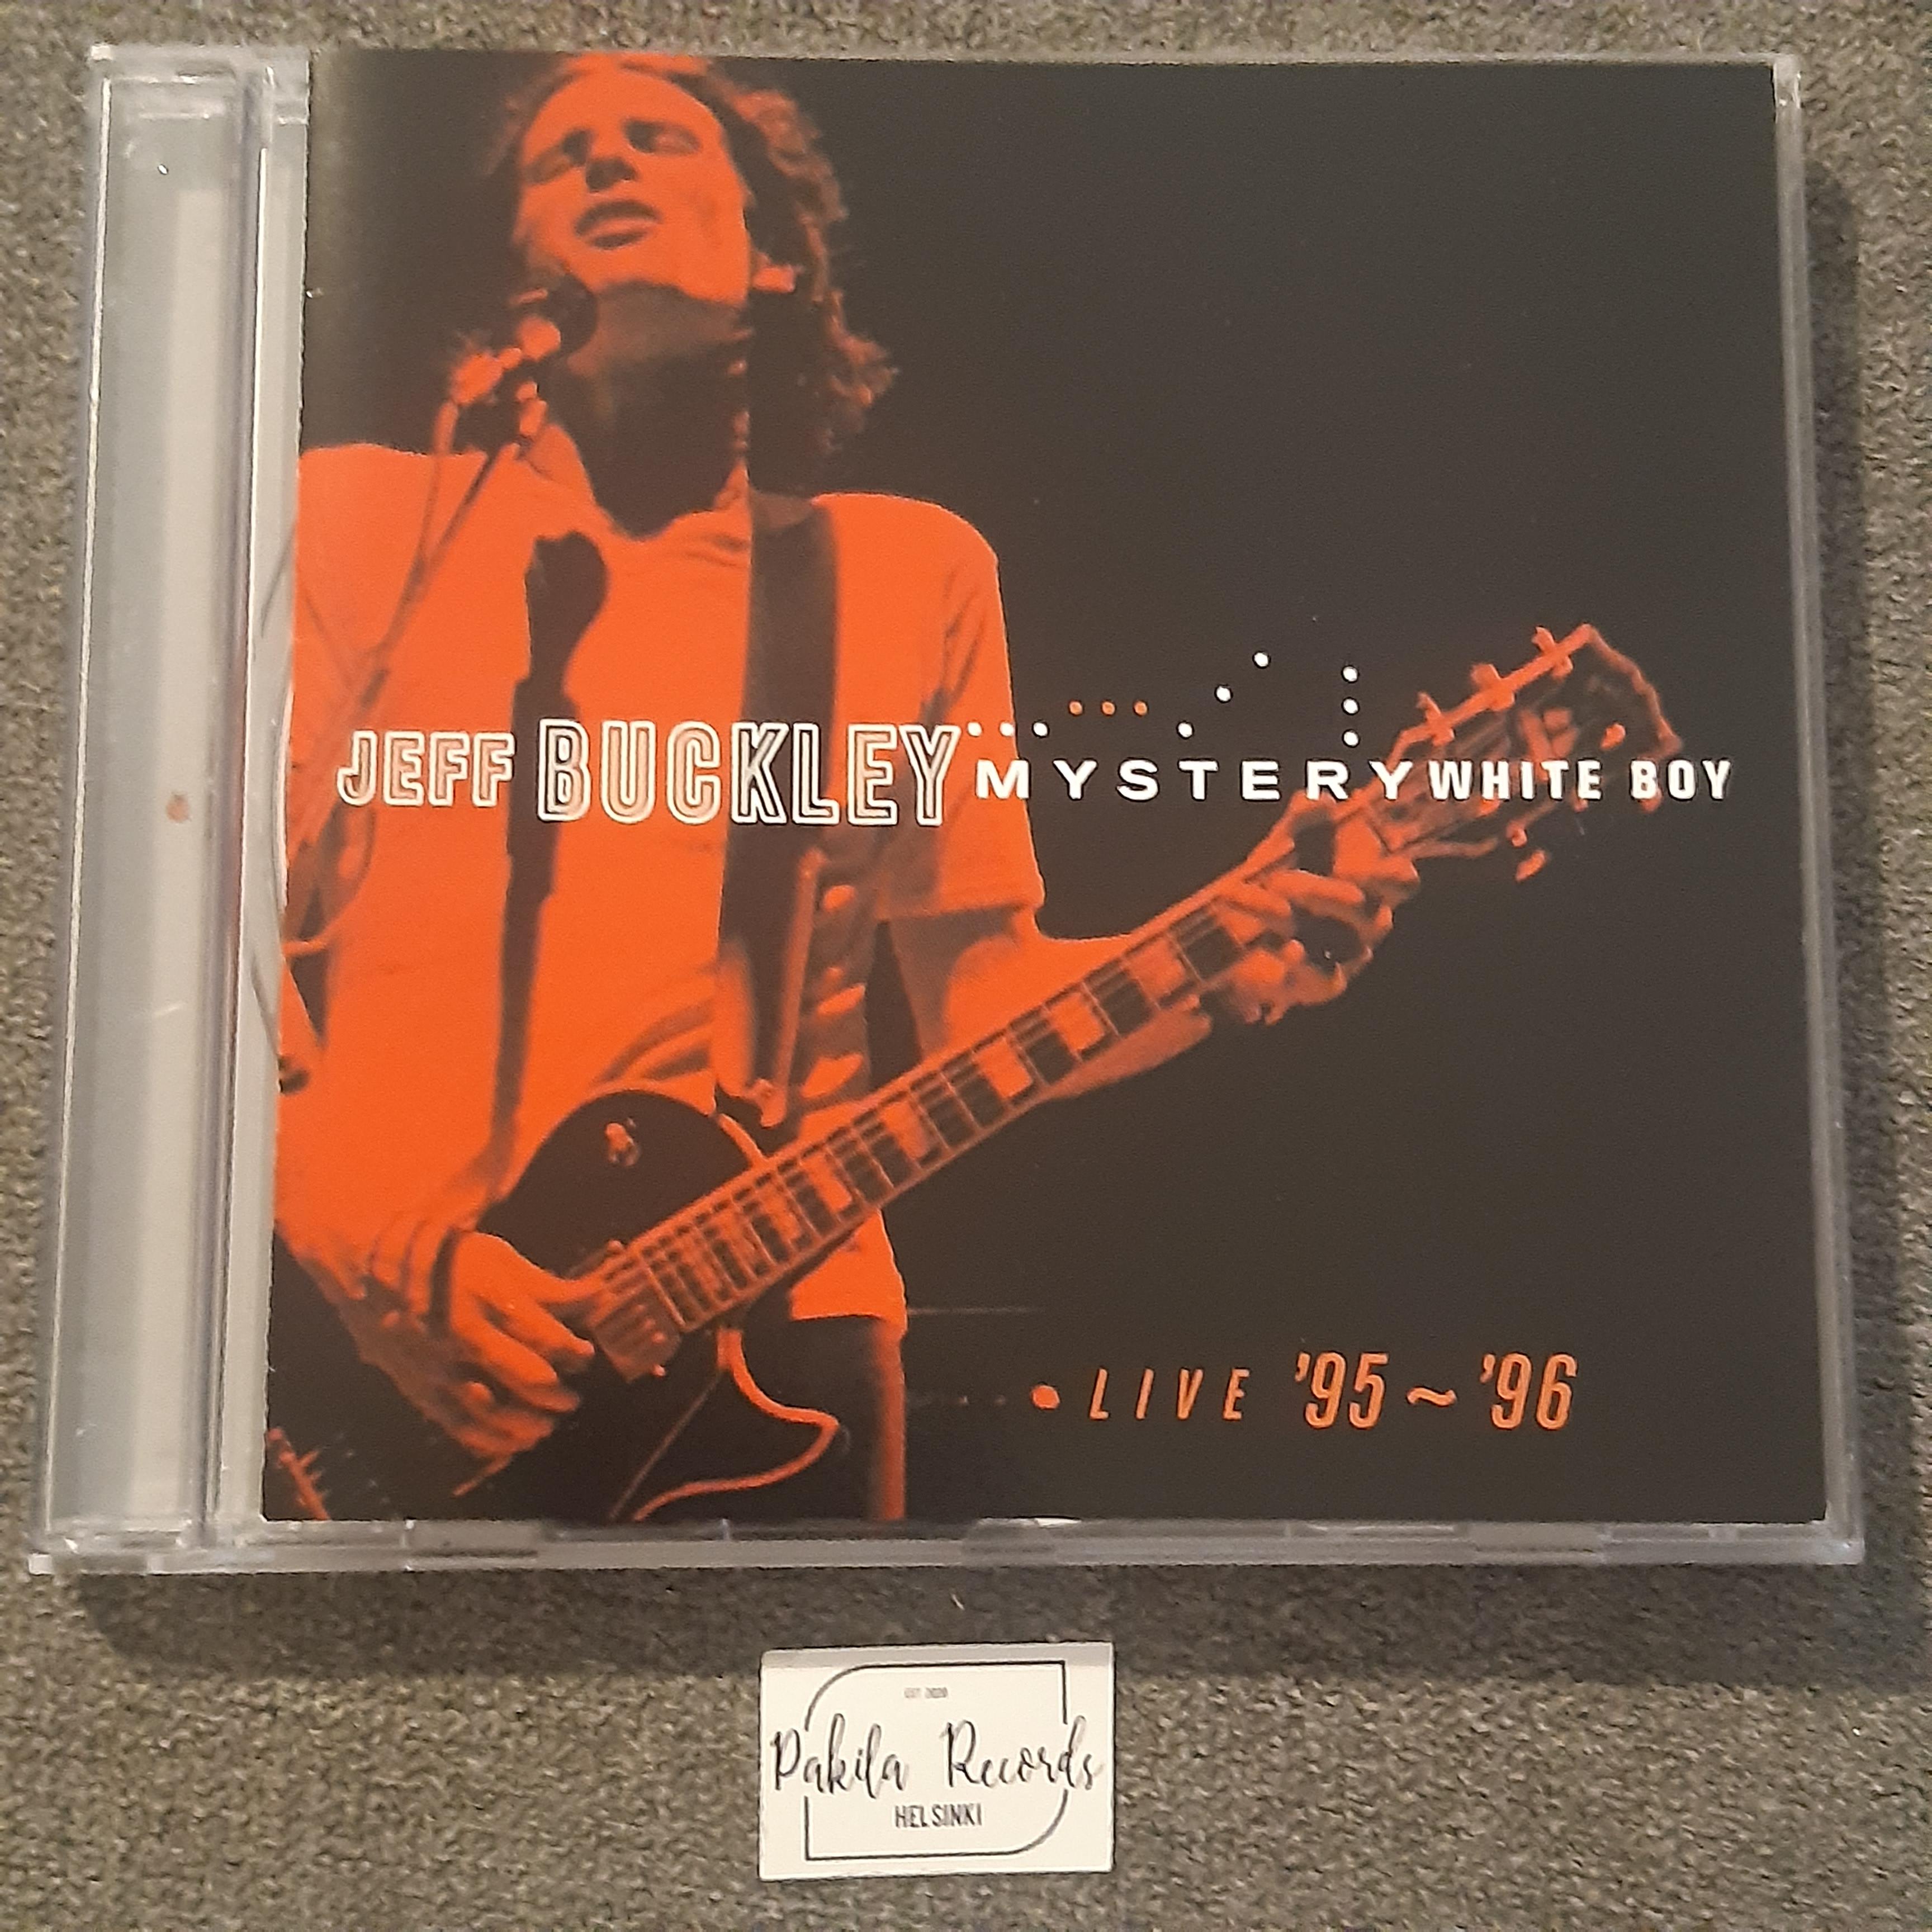 Jeff Buckley - Mystery White Boy (Live '95 - '96) - CD (käytetty)